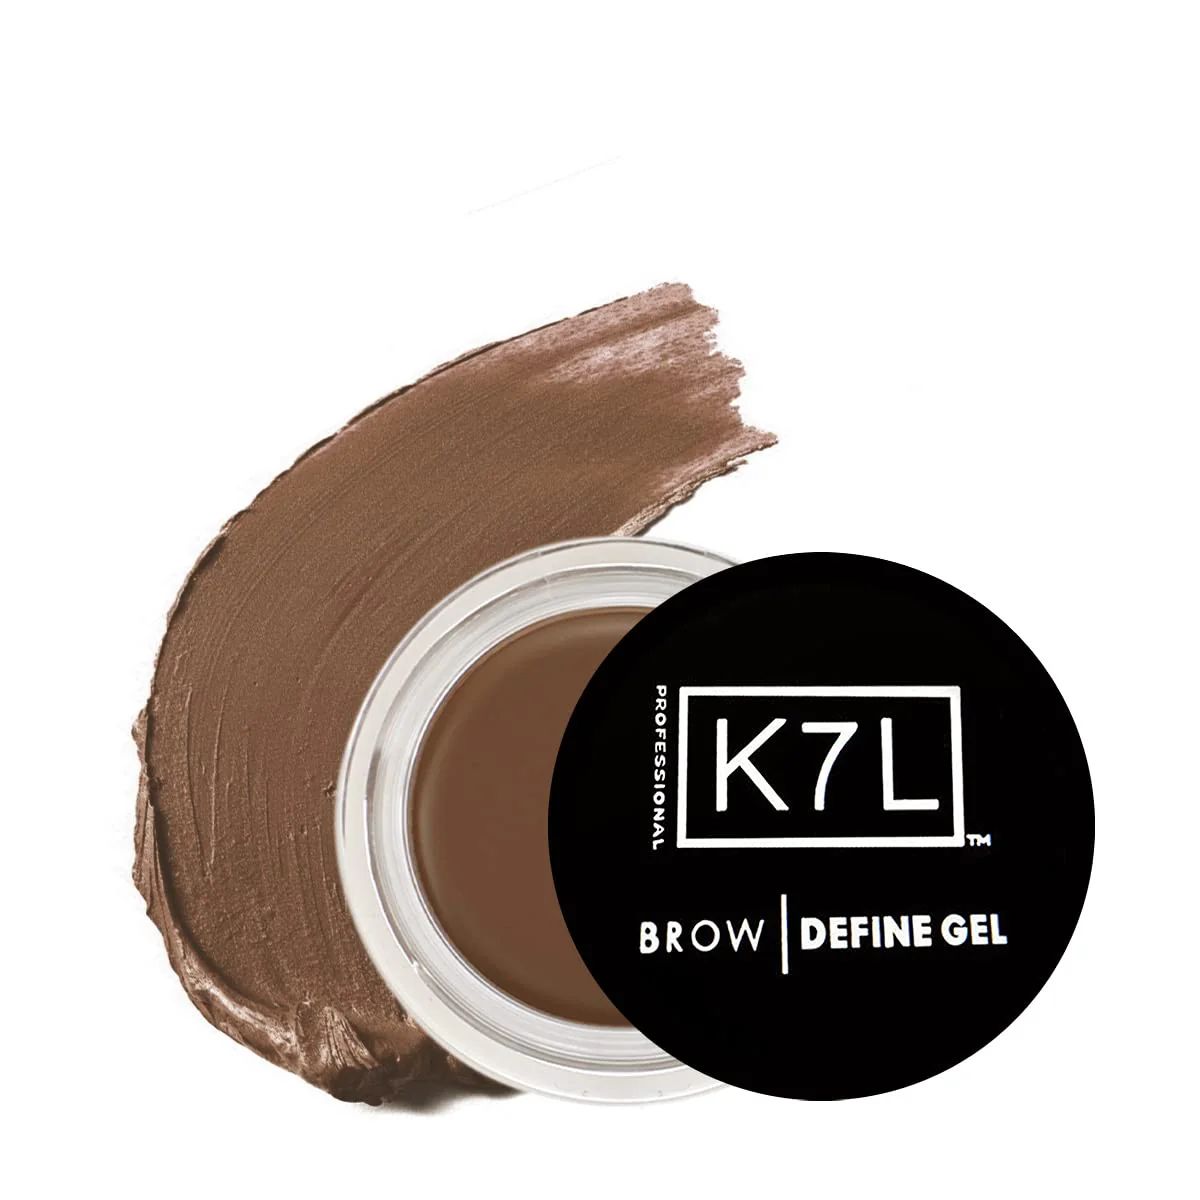 Brow Define | K7L Cosmetics